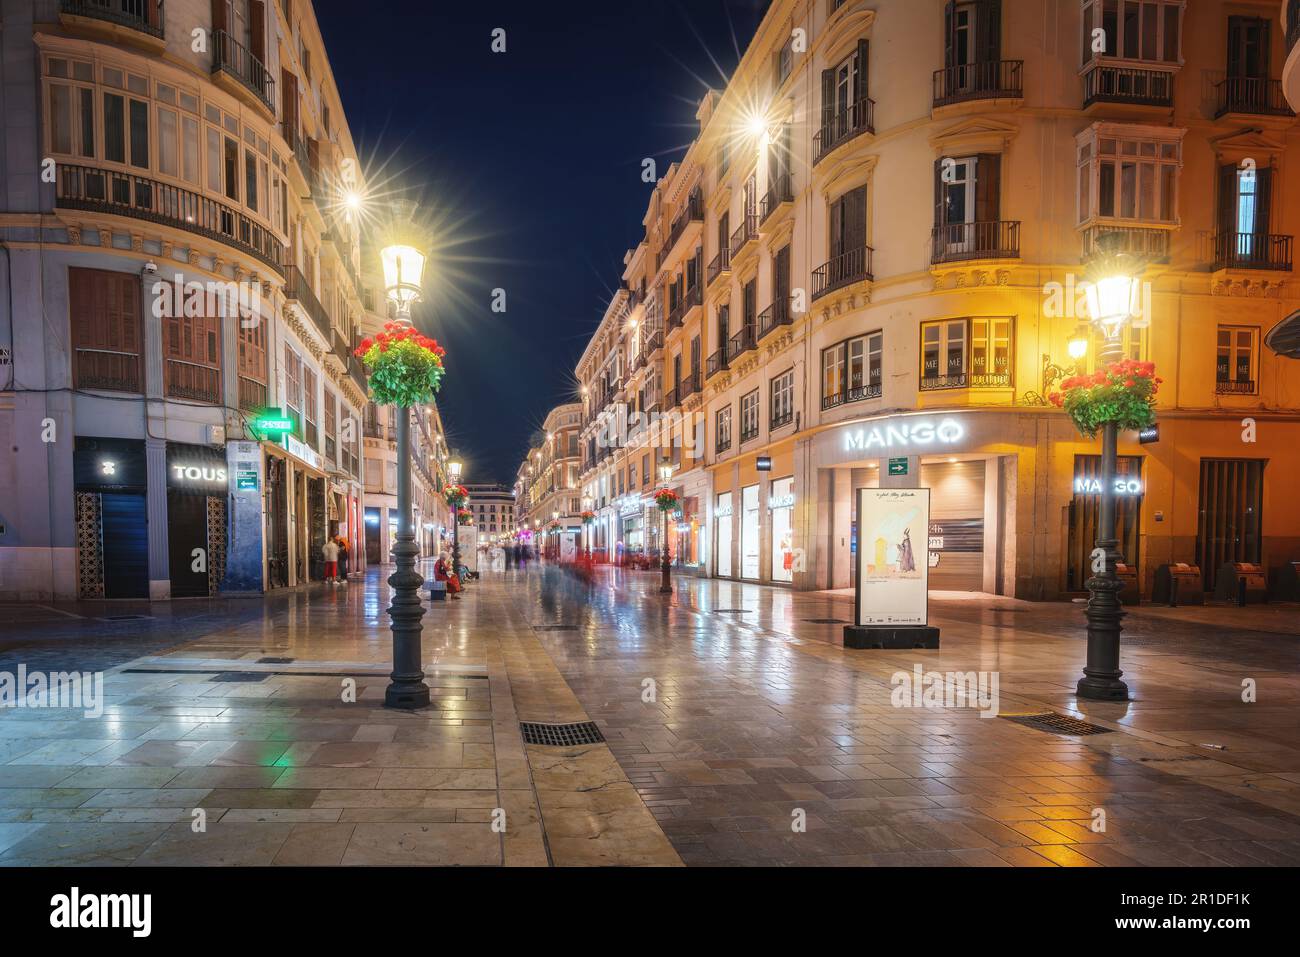 Calle Larios de nuit - célèbre rue piétonne et commerçante - Malaga, Andalousie, Espagne Banque D'Images